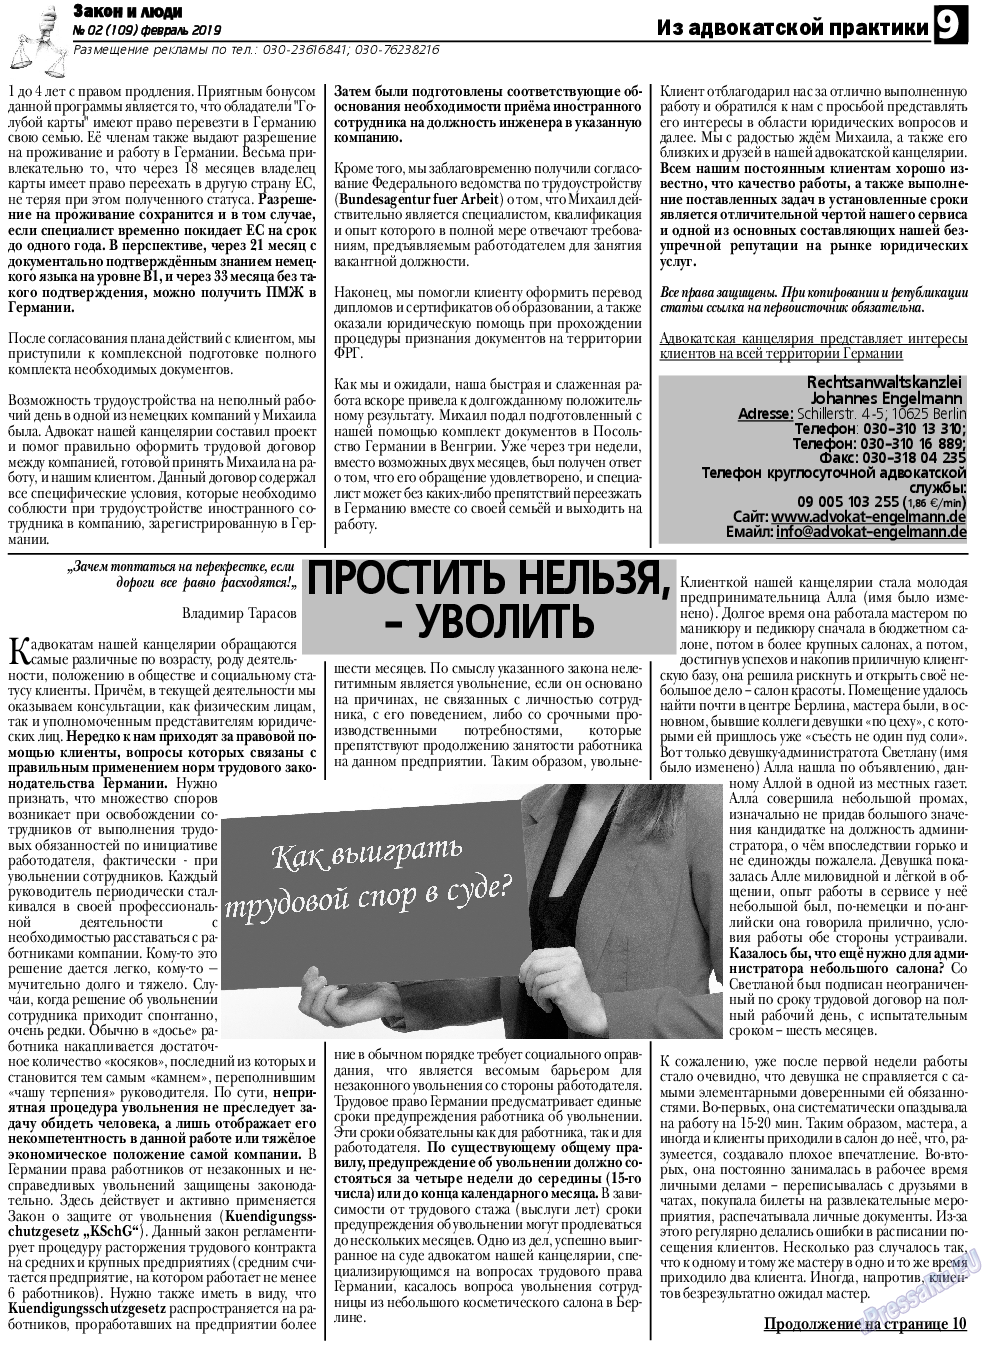 Закон и люди, газета. 2019 №2 стр.9